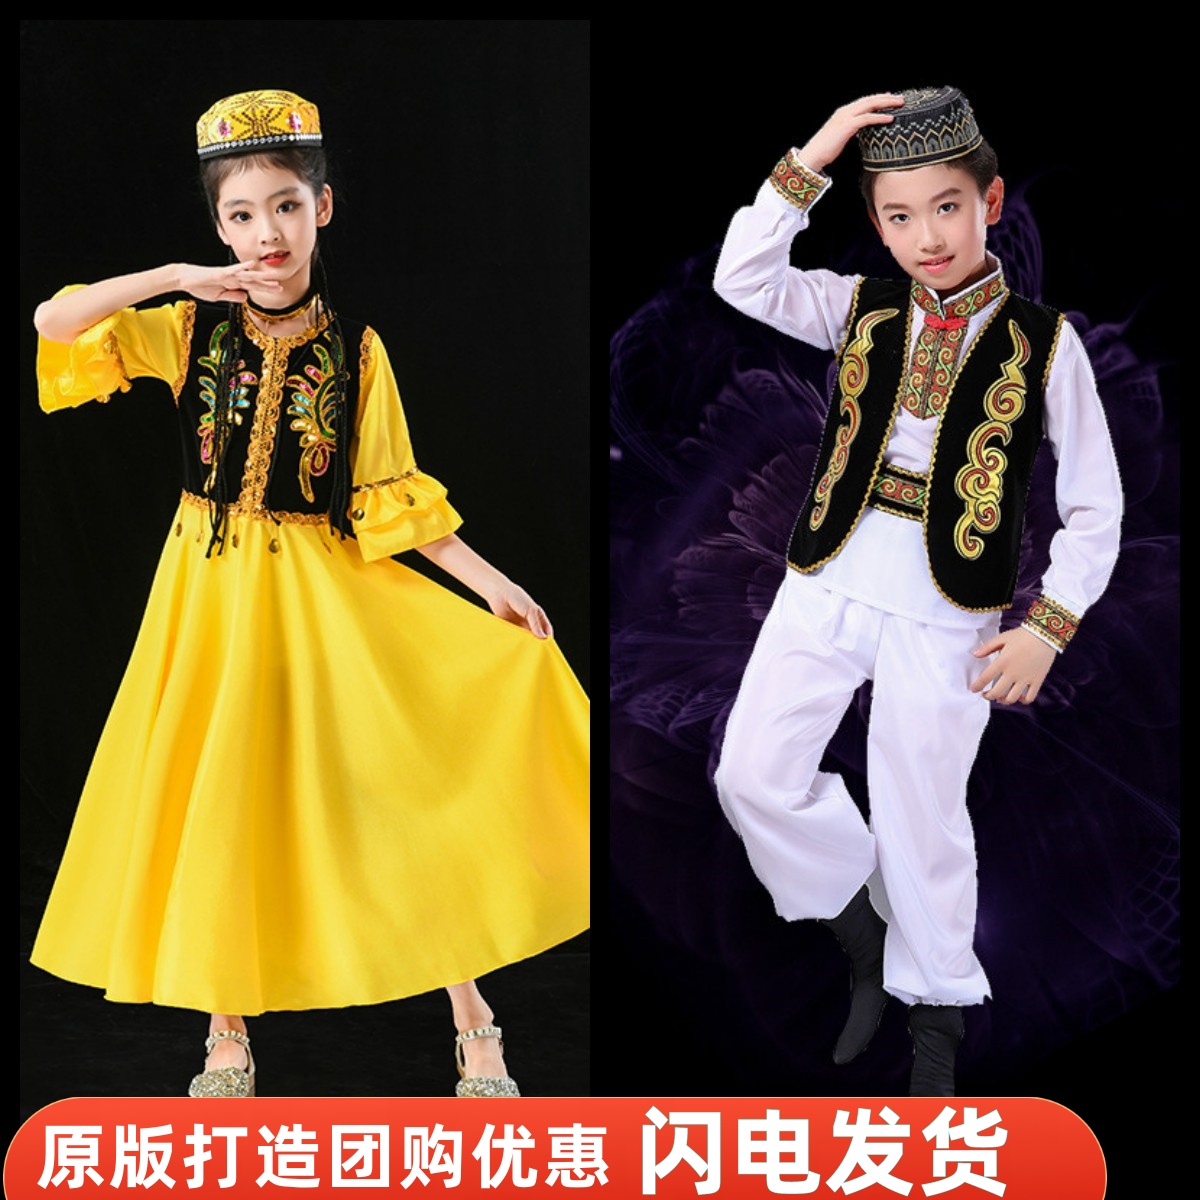 新款六一儿童少数民族演出服新疆舞服元旦幼儿舞蹈服男女维吾儿族